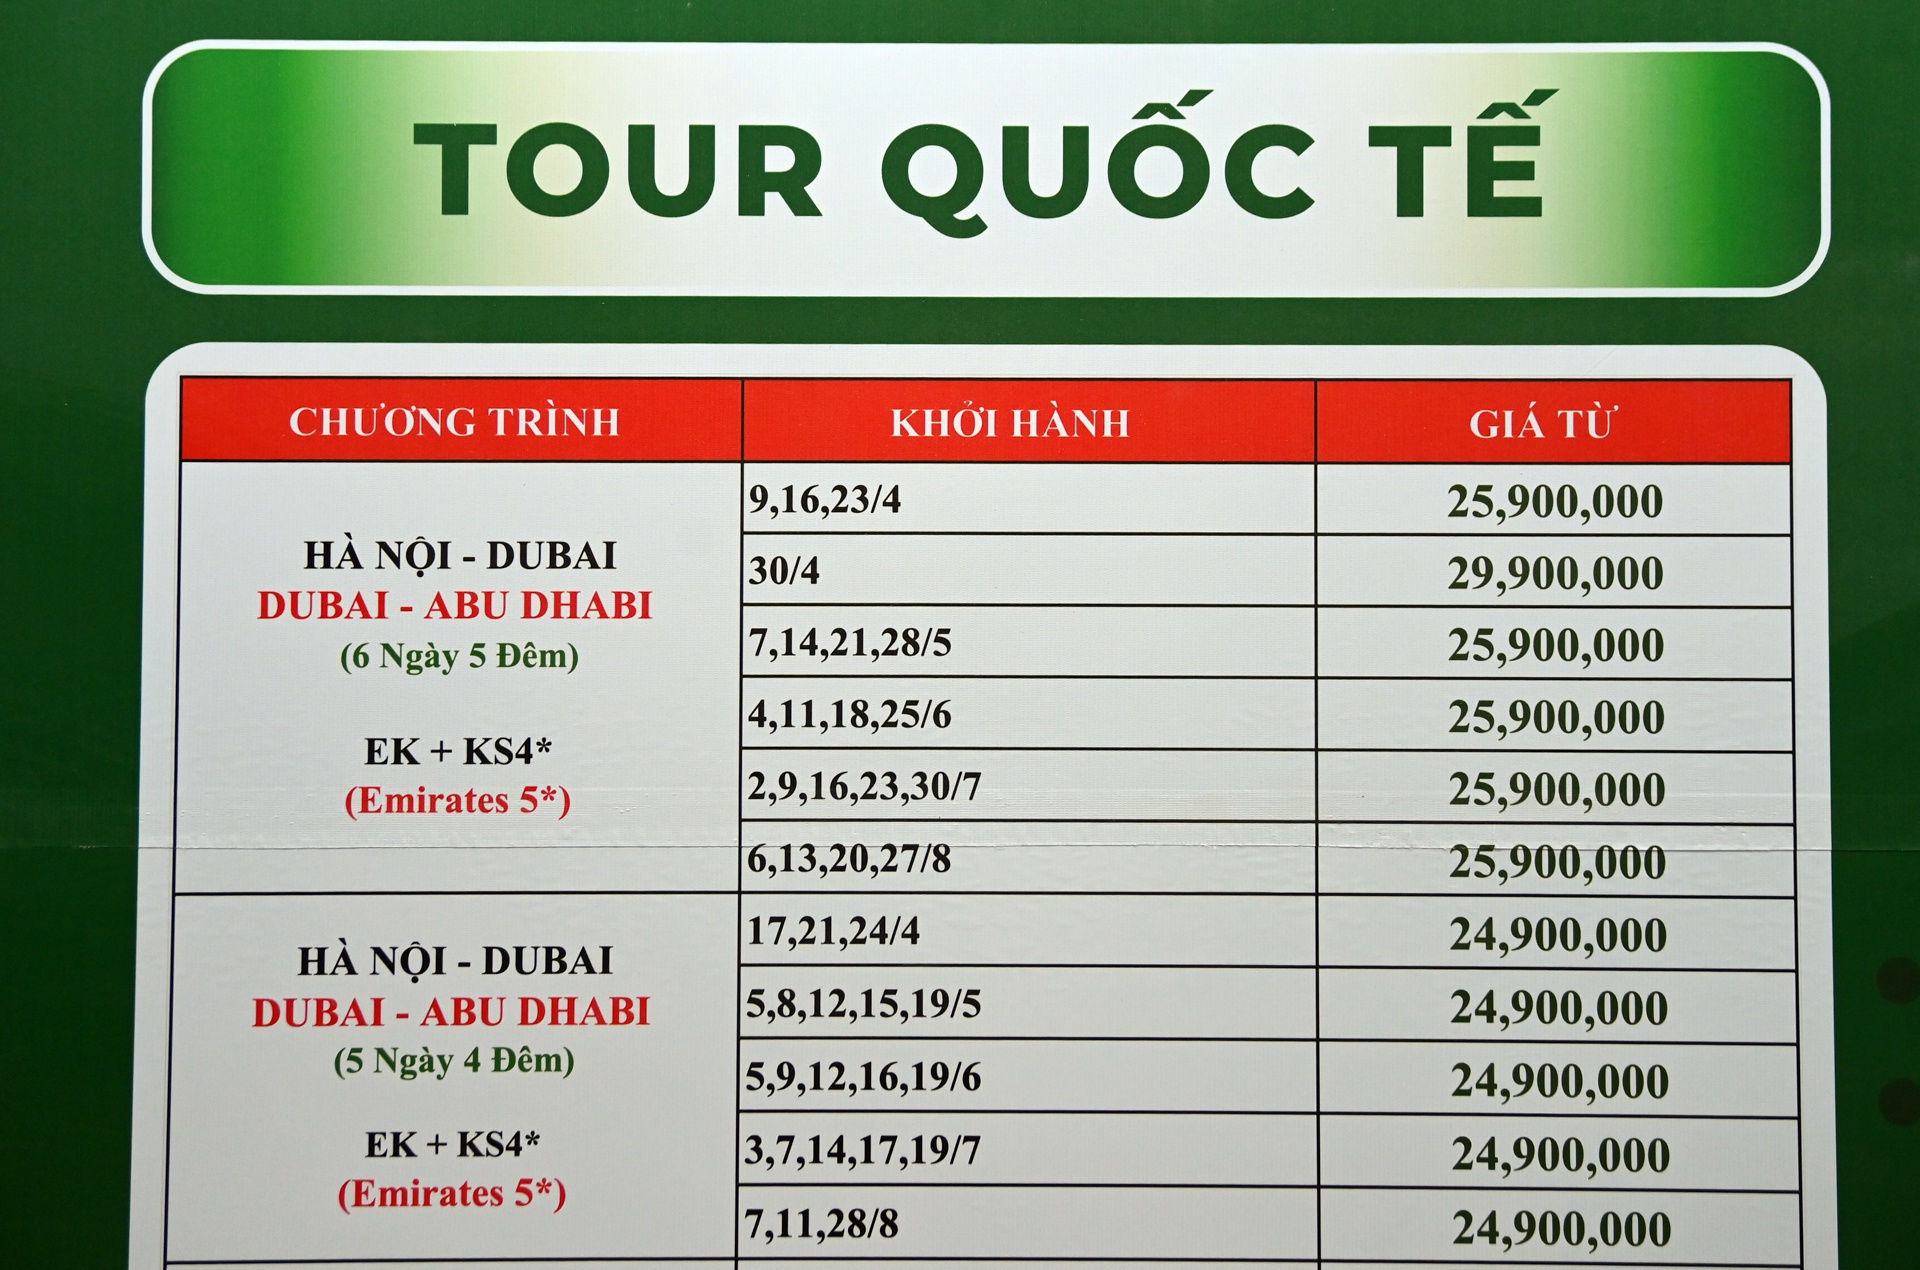 Hoi cho du lich Quoc te Viet Nam 2022 anh 7  - hoichodulich2022_7_zing - Tour trong nước lên ngôi, du lịch quốc tế dè dặt sau đại dịch